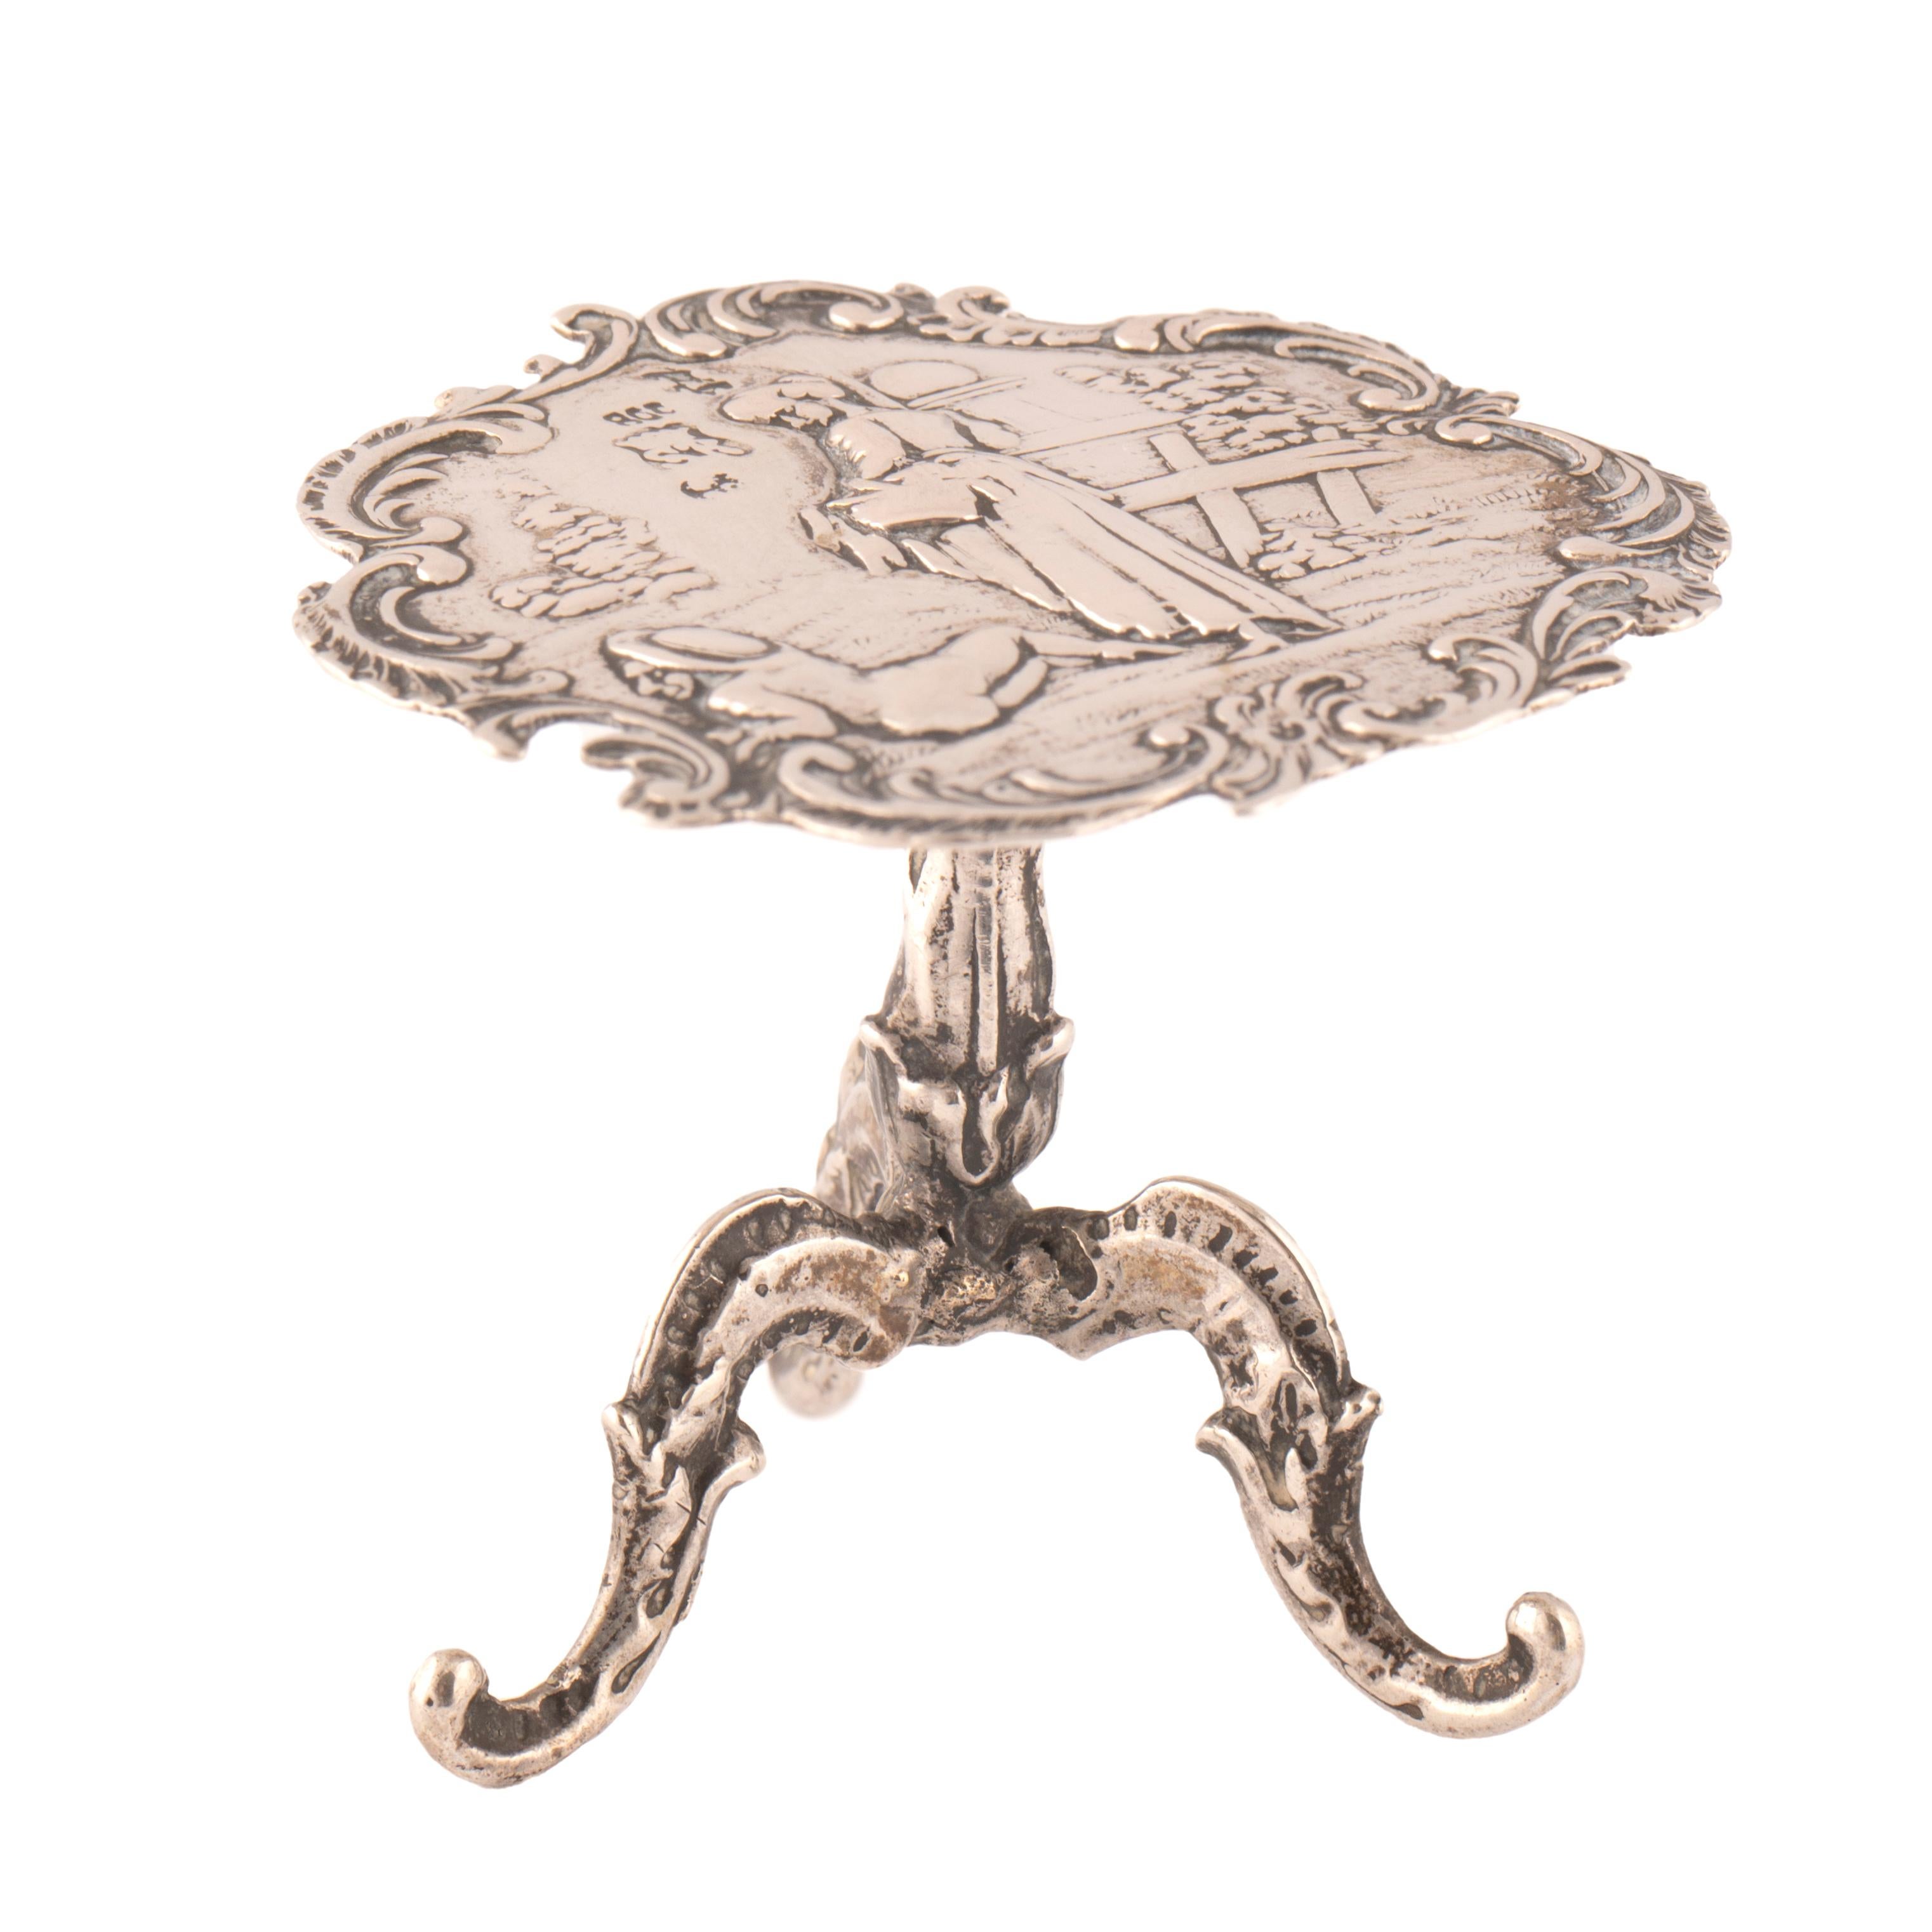 Charmant guéridon miniature en argent de style Rococo réalisé au début du siècle dernier pour une maison de poupée.  Dans le goût romantique, le plateau circulaire en argent repoussé rappelant les peintures de Watteau, artiste français du XVIIe